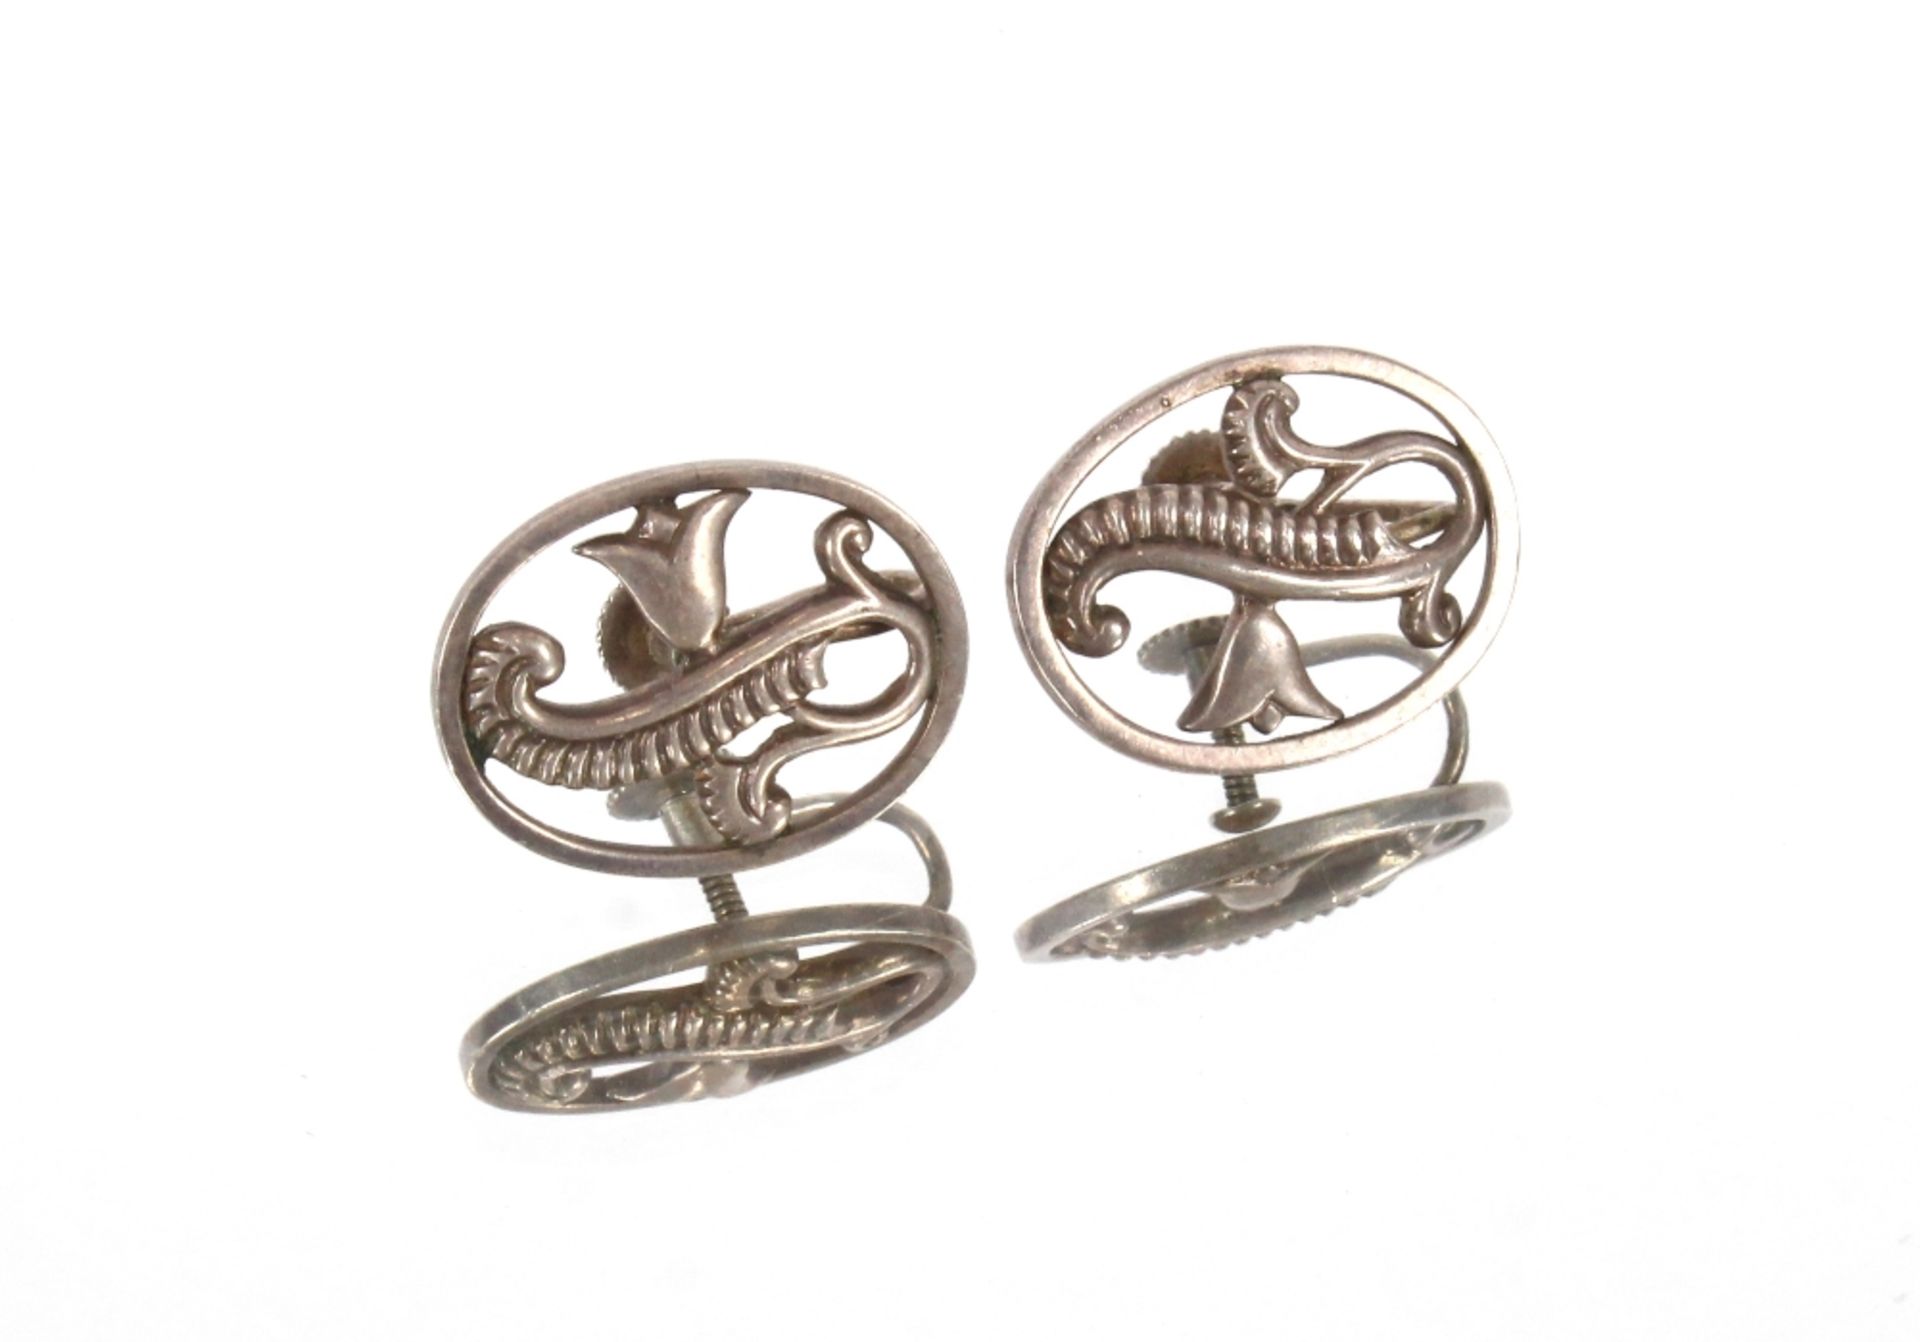 A pair of silver George Tarrett ear-rings of folia